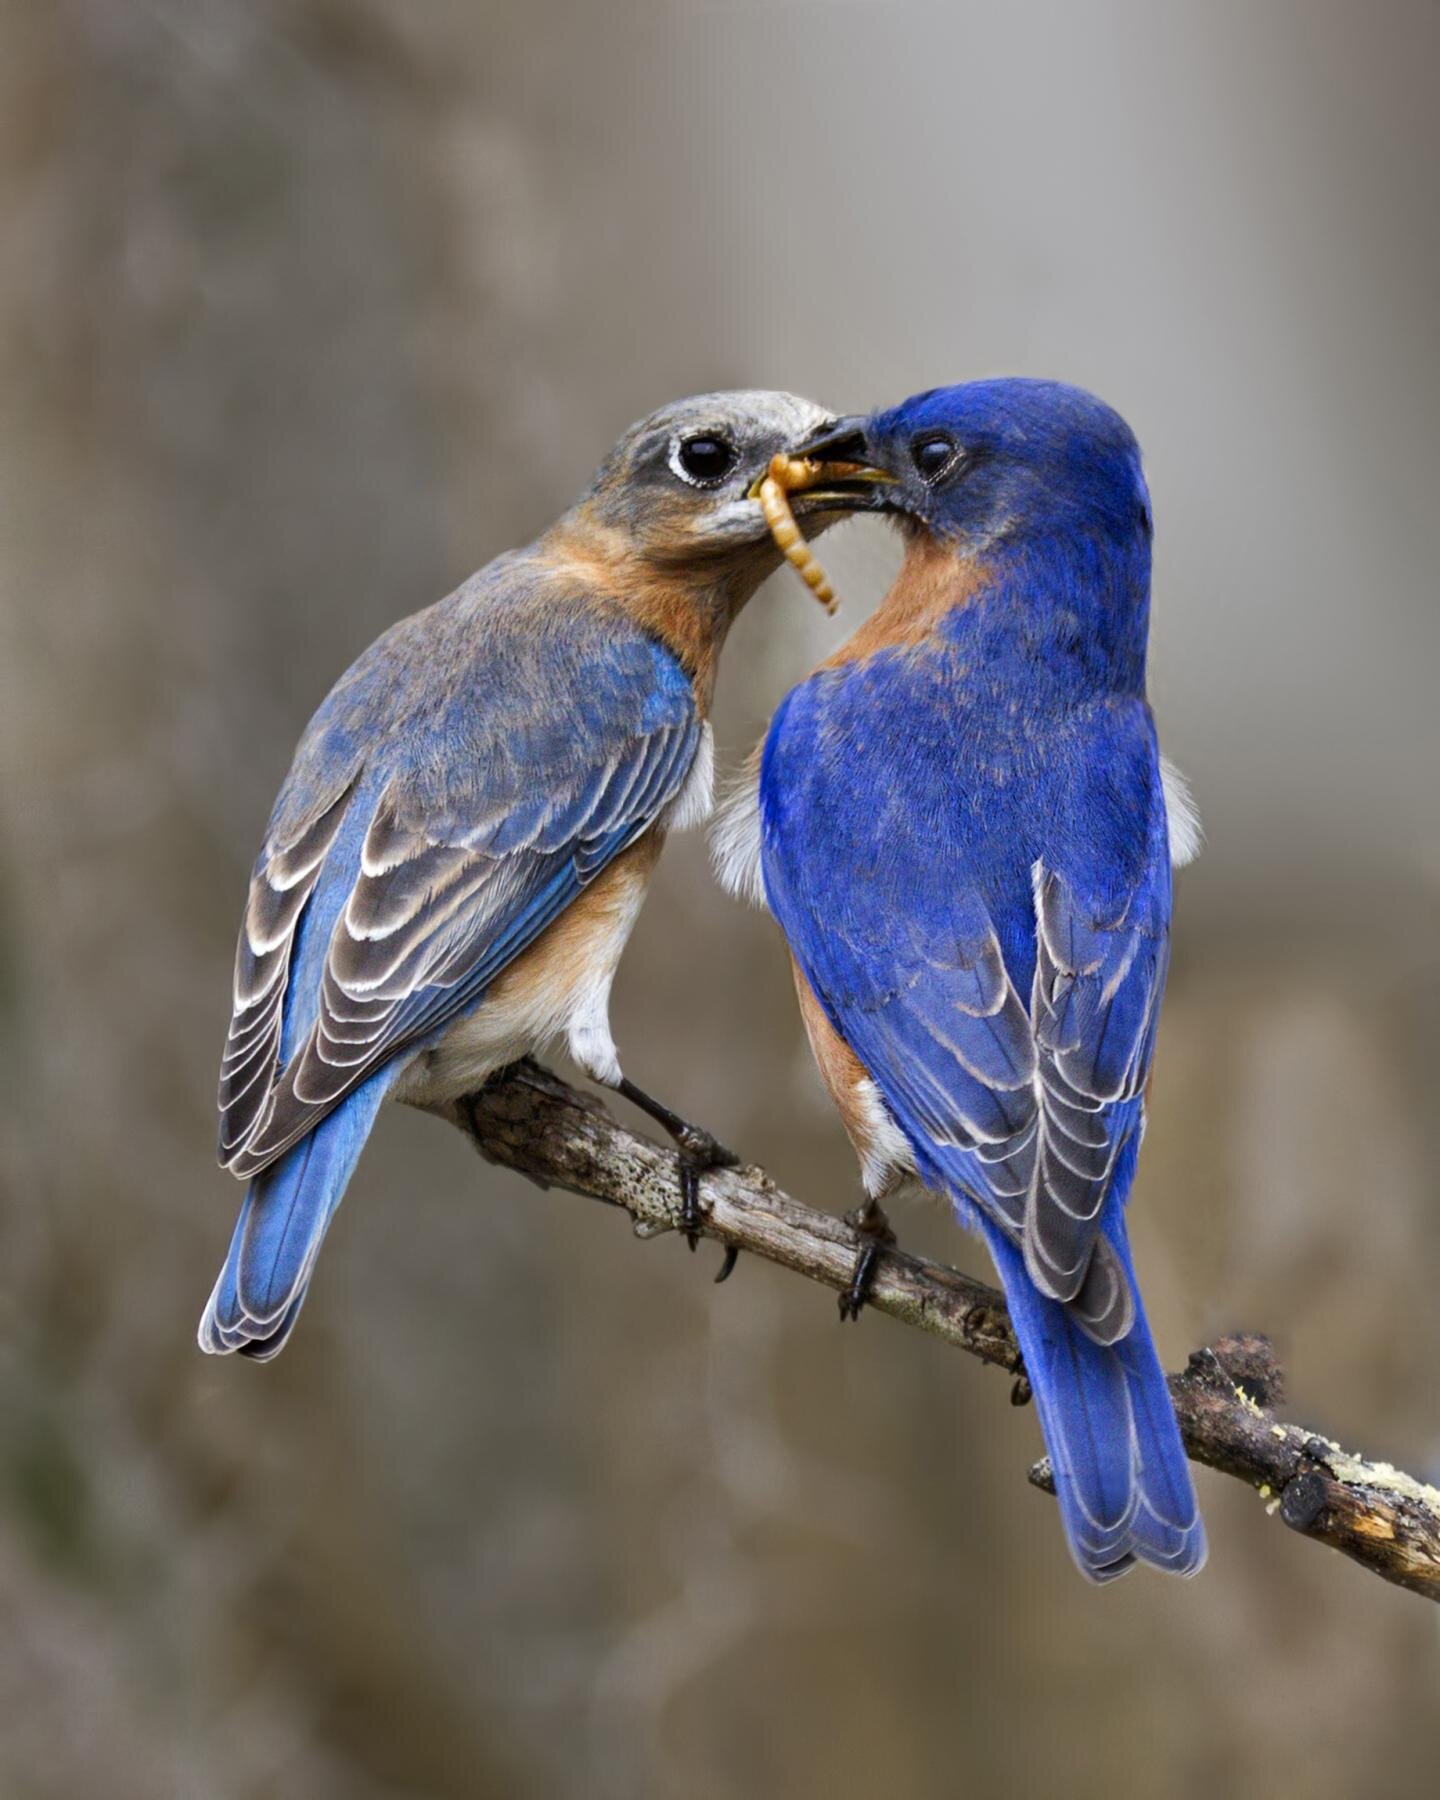 Study examines attitudes toward non-native birds